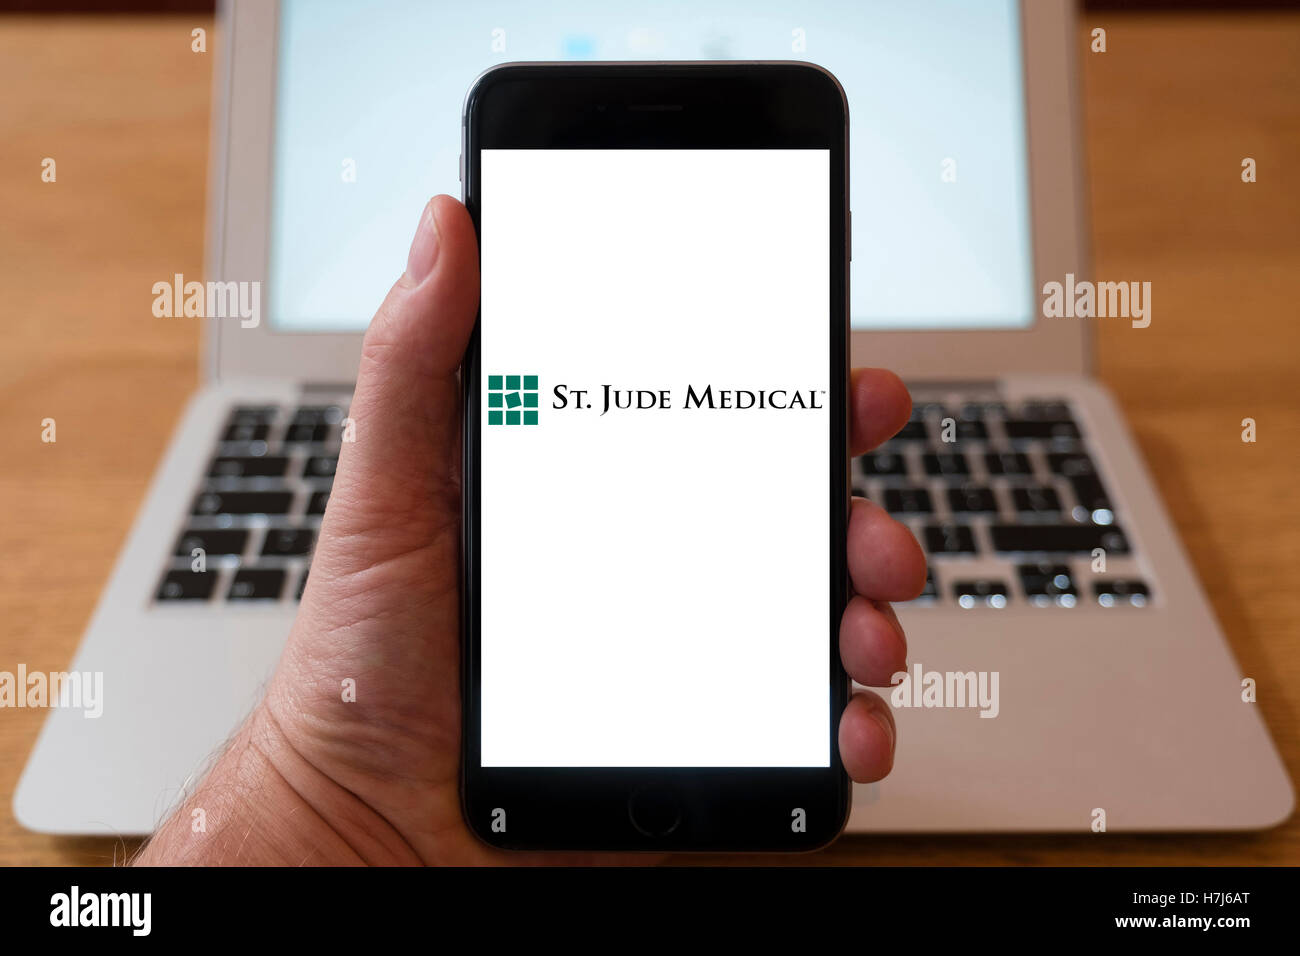 Utilizzo di iPhone smart phone per visualizzare il logo della st Jude , medico, un americano global medical device company Foto Stock